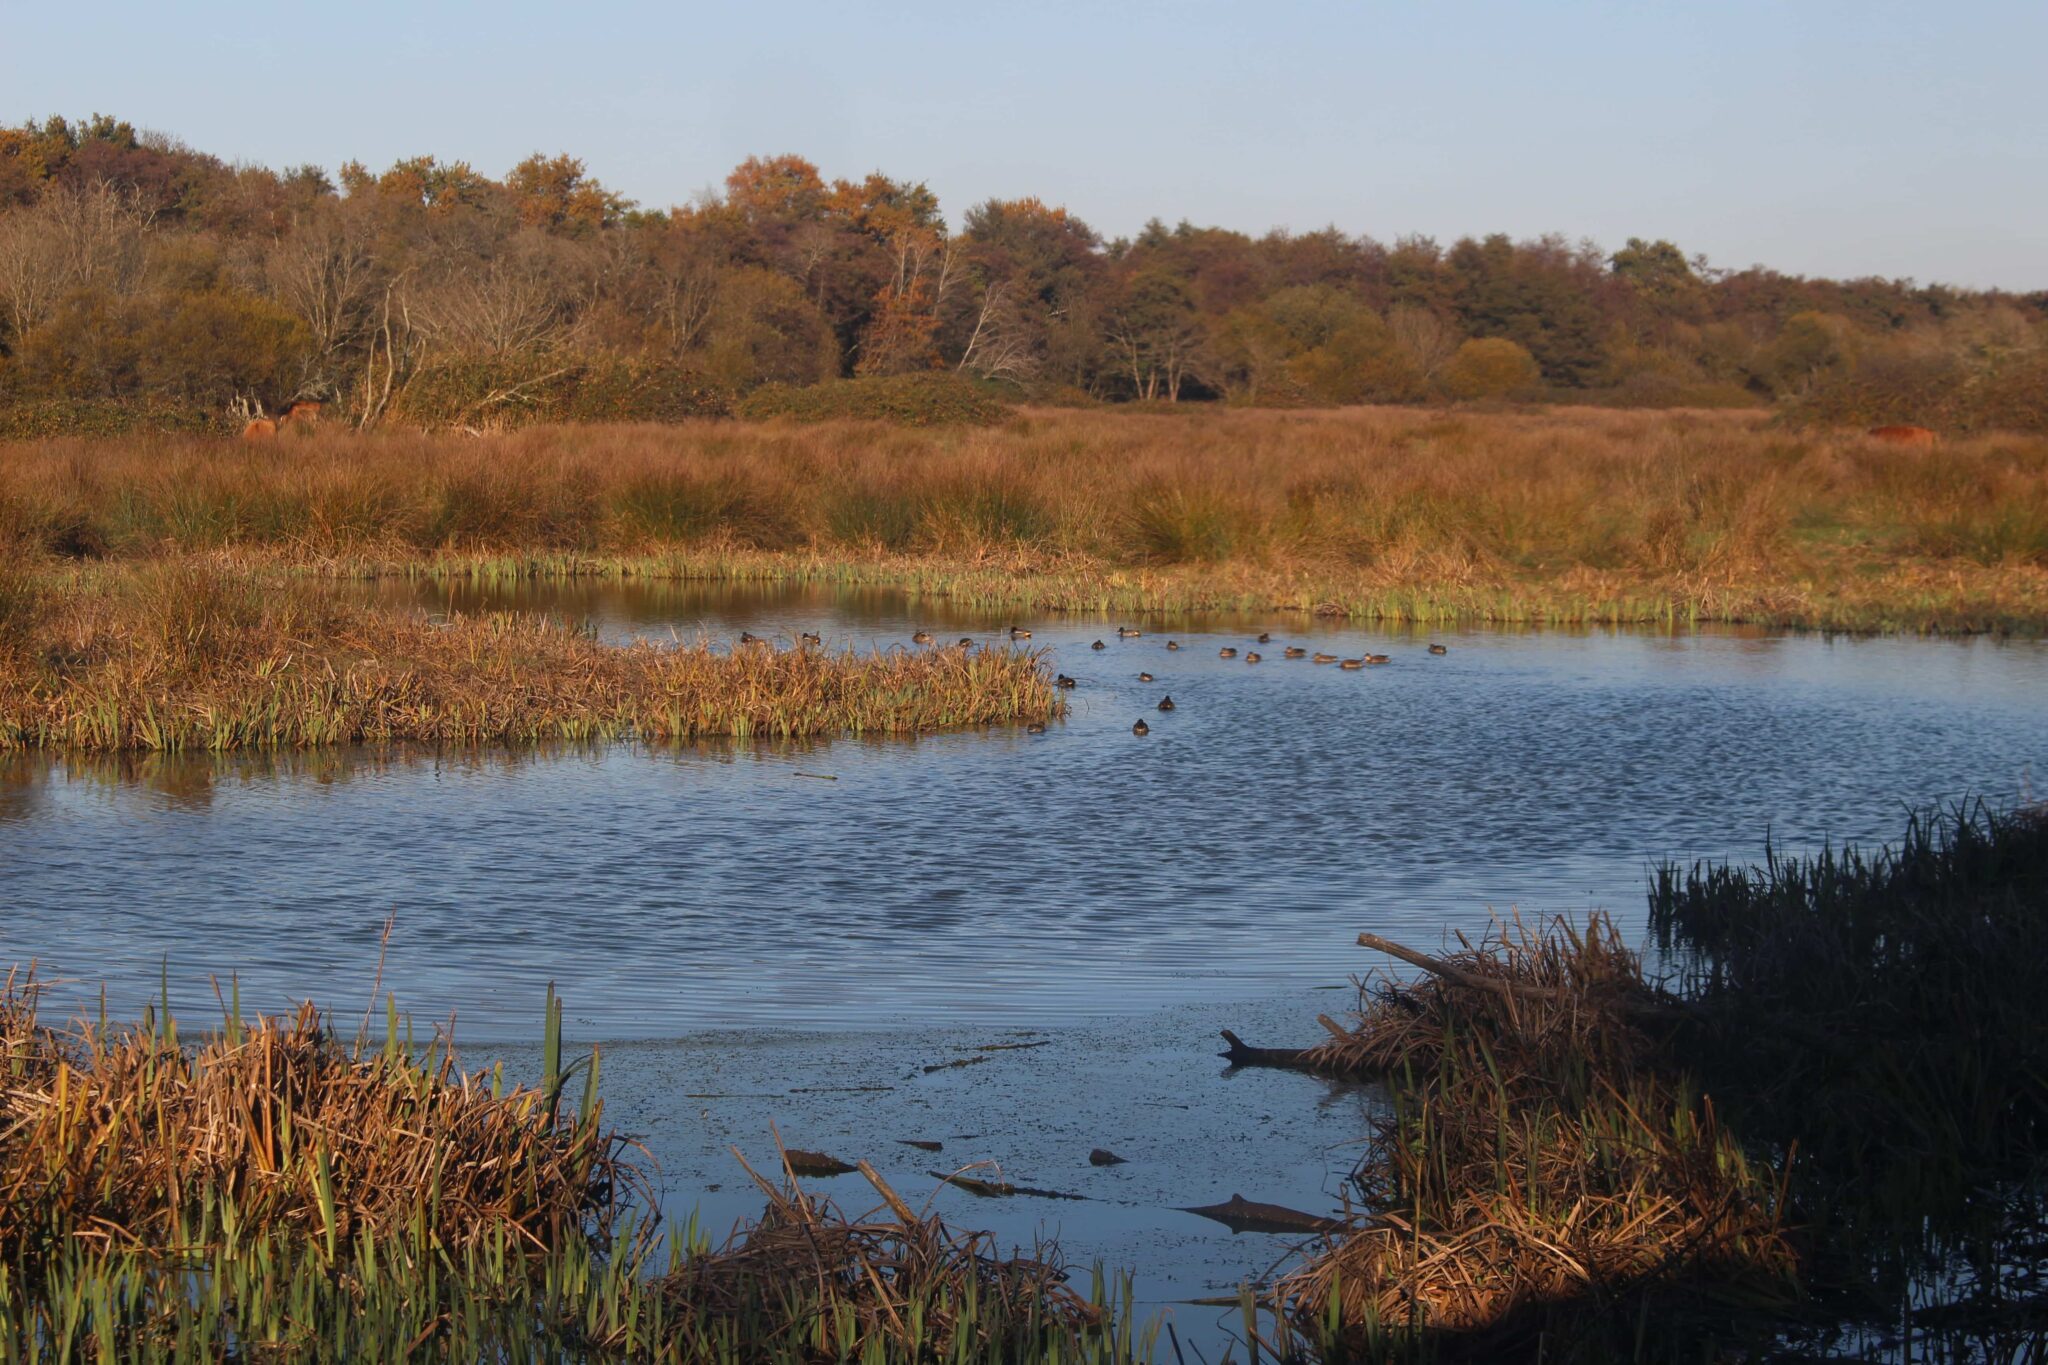 Canards, poules d’eau, hérons, etc. : de nombreux volatiles adaptés aux zones humides viennent trouver refuge dans la réserve, autant dans ses cours d’eau que sur ses rivages.